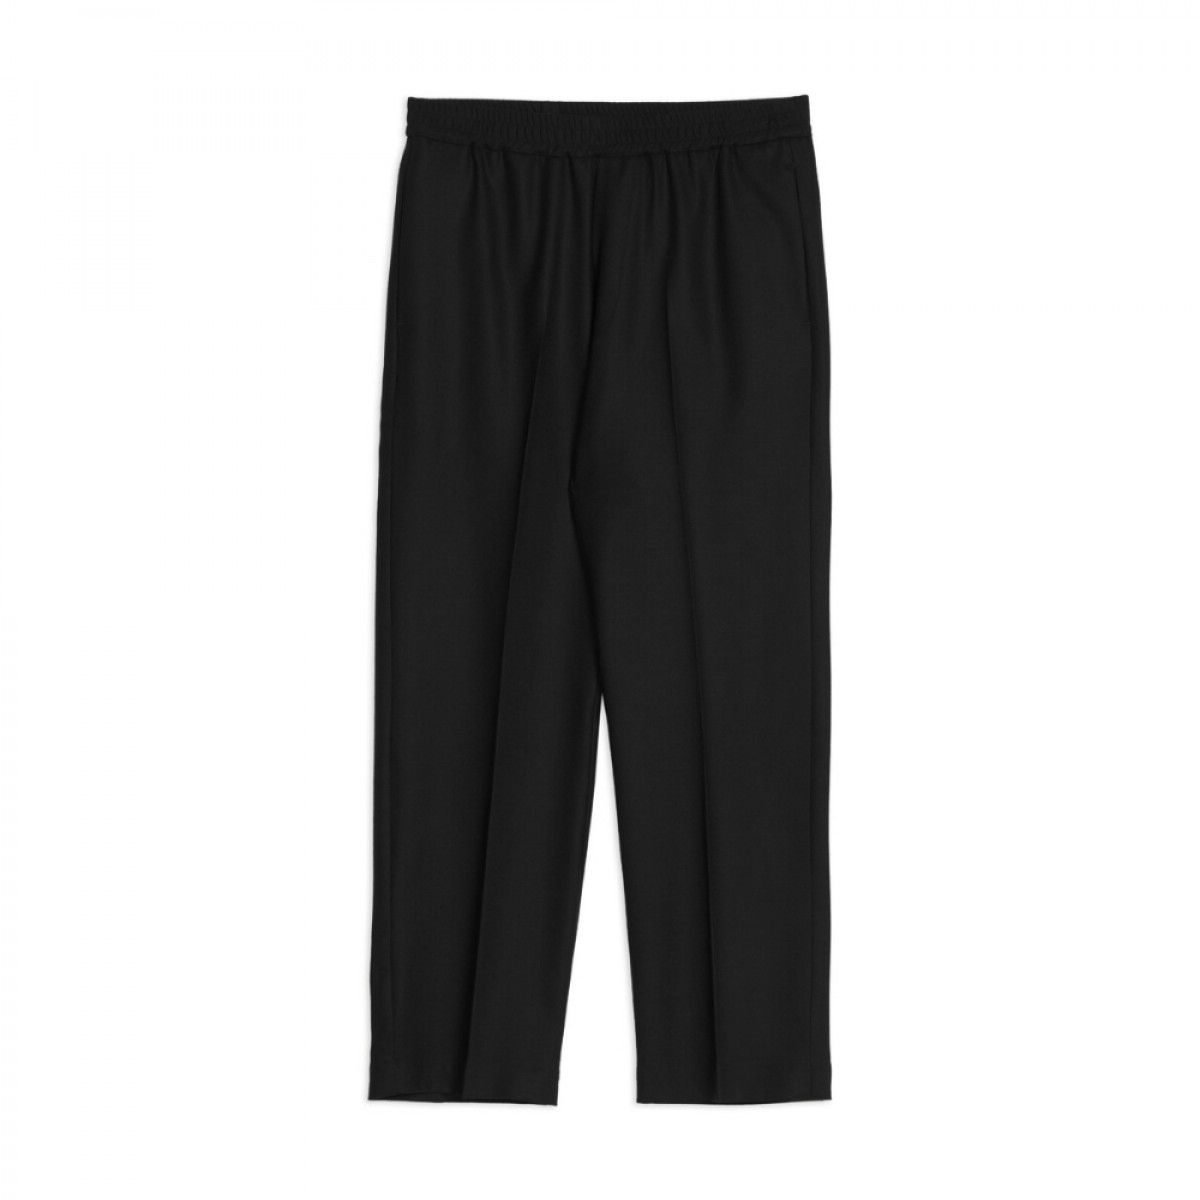 pantalone alfonso frare - black - front